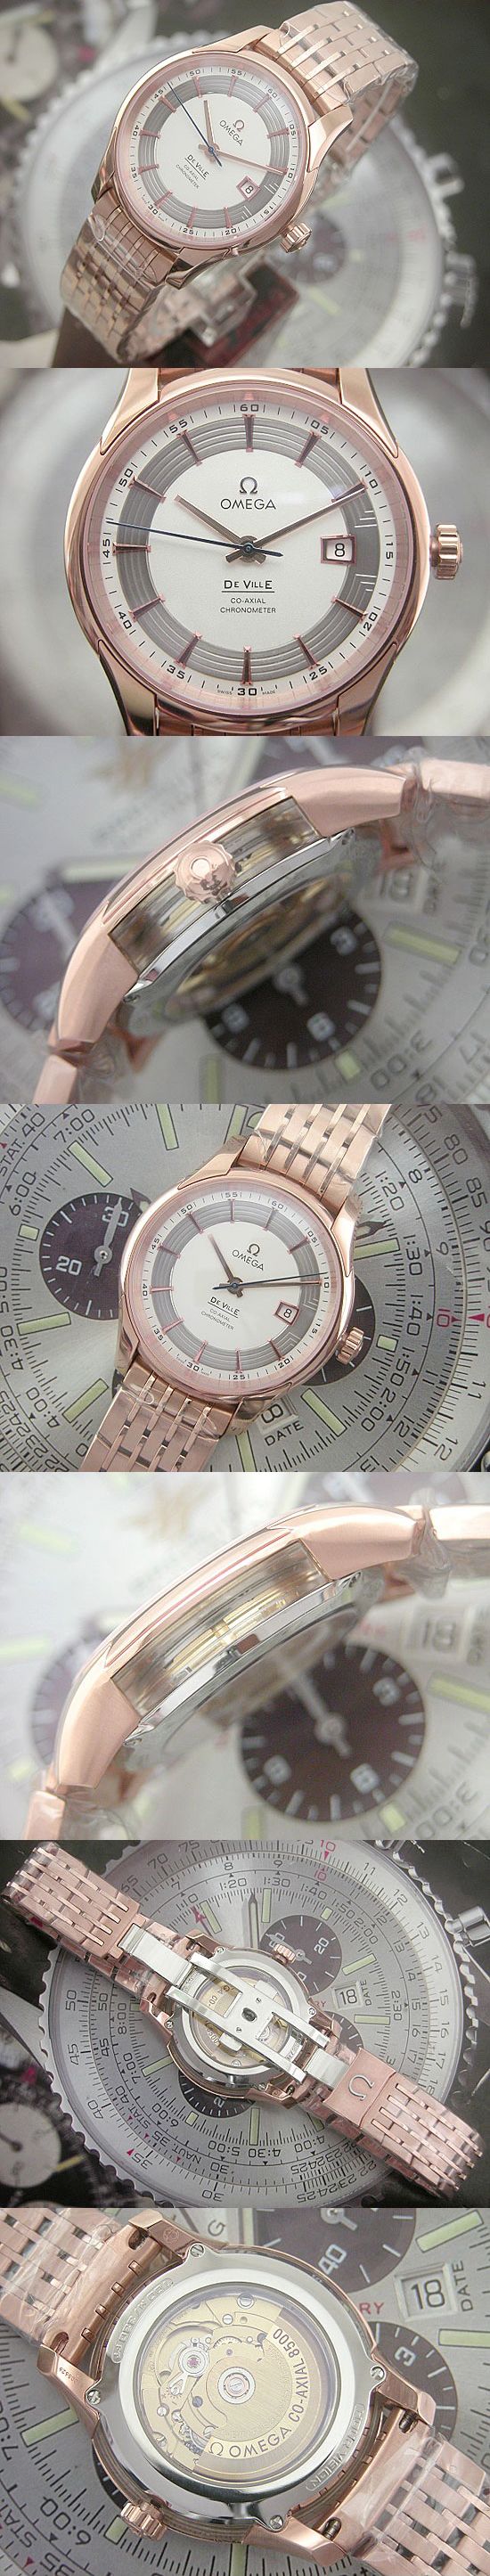 おしゃれなブランド時計がオメガ-デビル-OMEGA-431.60.41.21.02.001-aa-男性用を提供します.